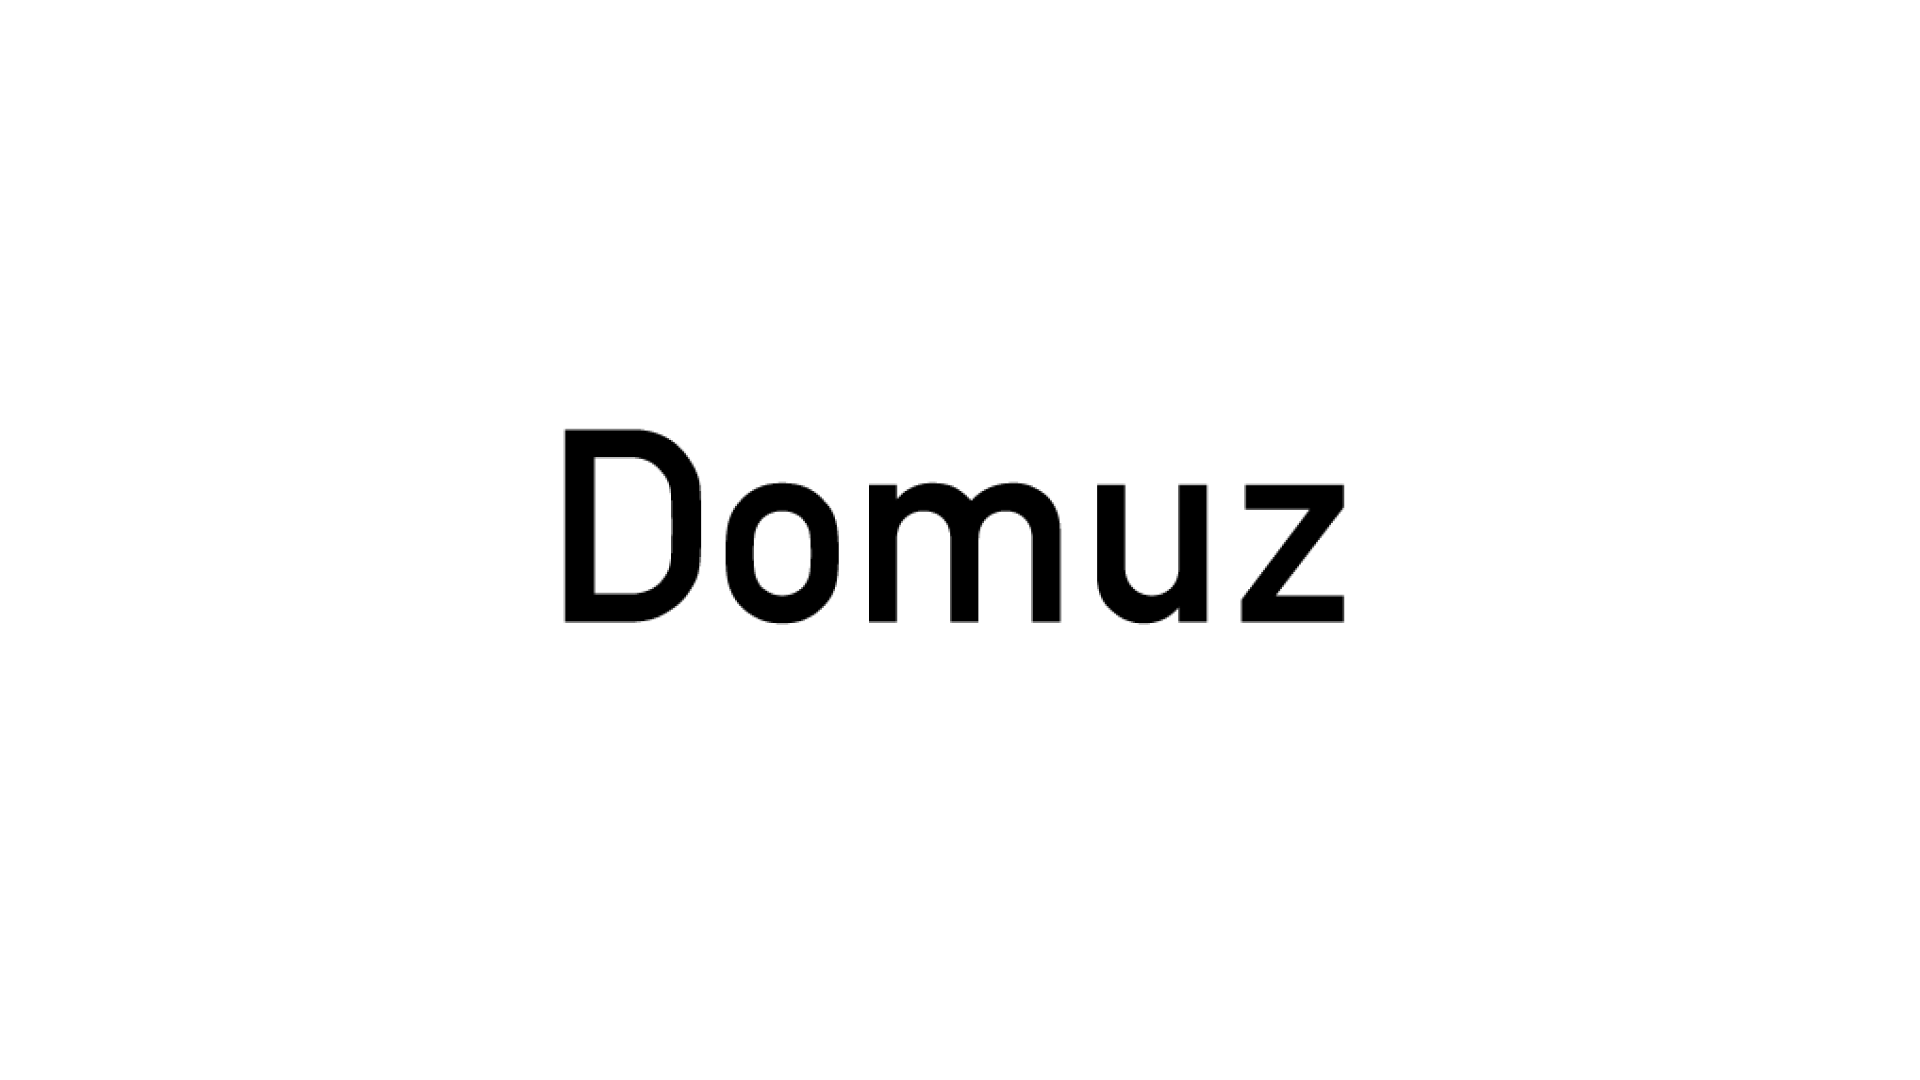 観葉植物と花のEC「アンドプランツ」を運営する株式会社Domuz、3億円の資金調達を実施